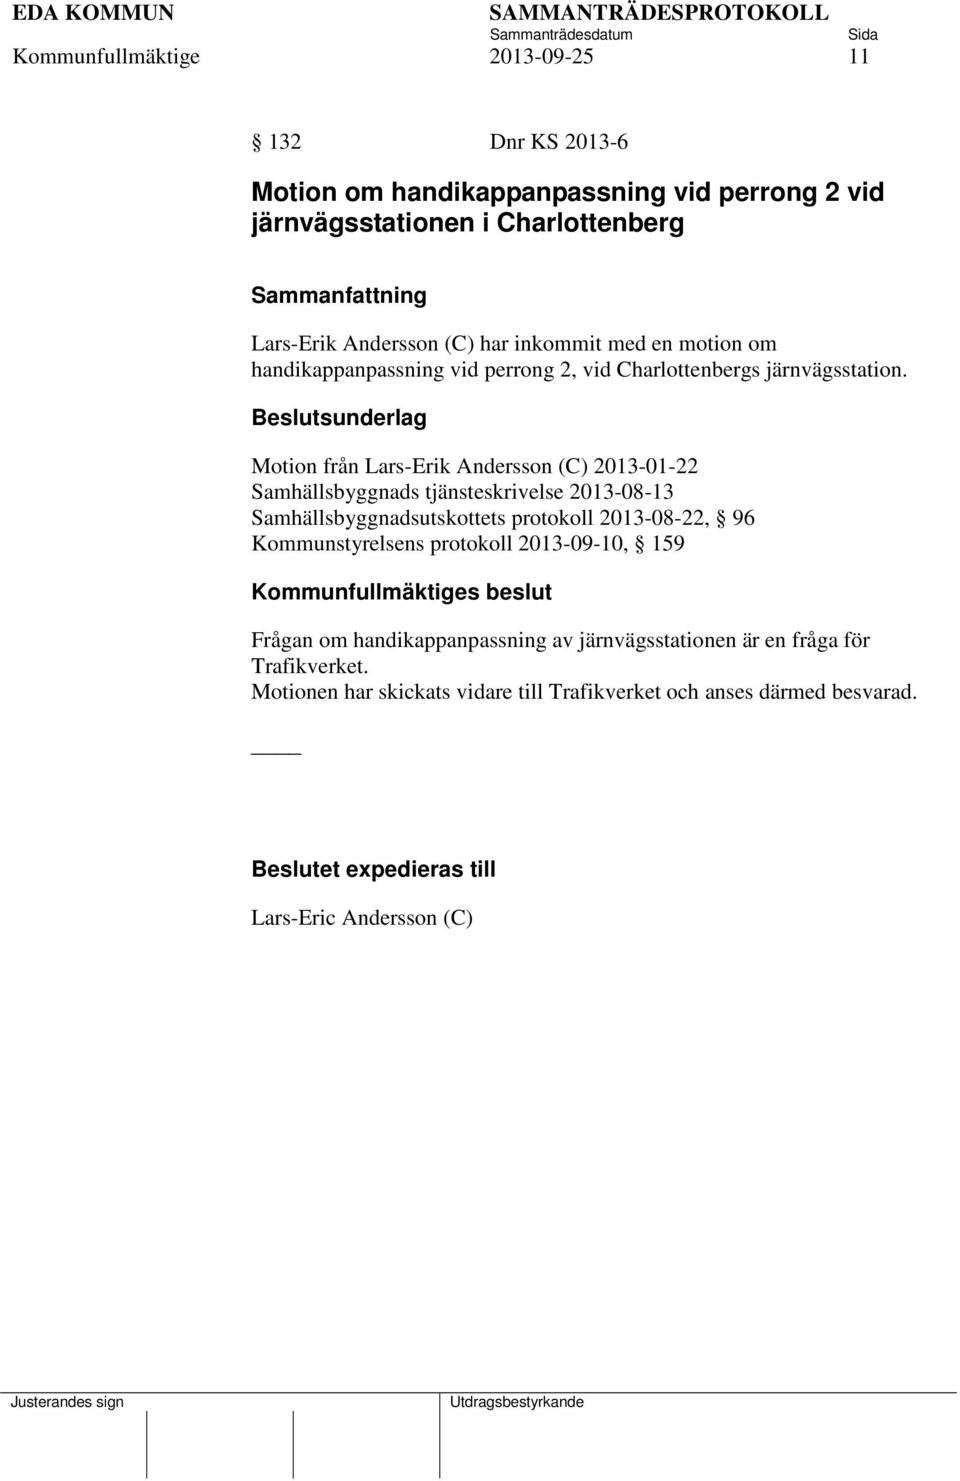 Motion från Lars-Erik Andersson (C) 2013-01-22 Samhällsbyggnads tjänsteskrivelse 2013-08-13 Samhällsbyggnadsutskottets protokoll 2013-08-22, 96